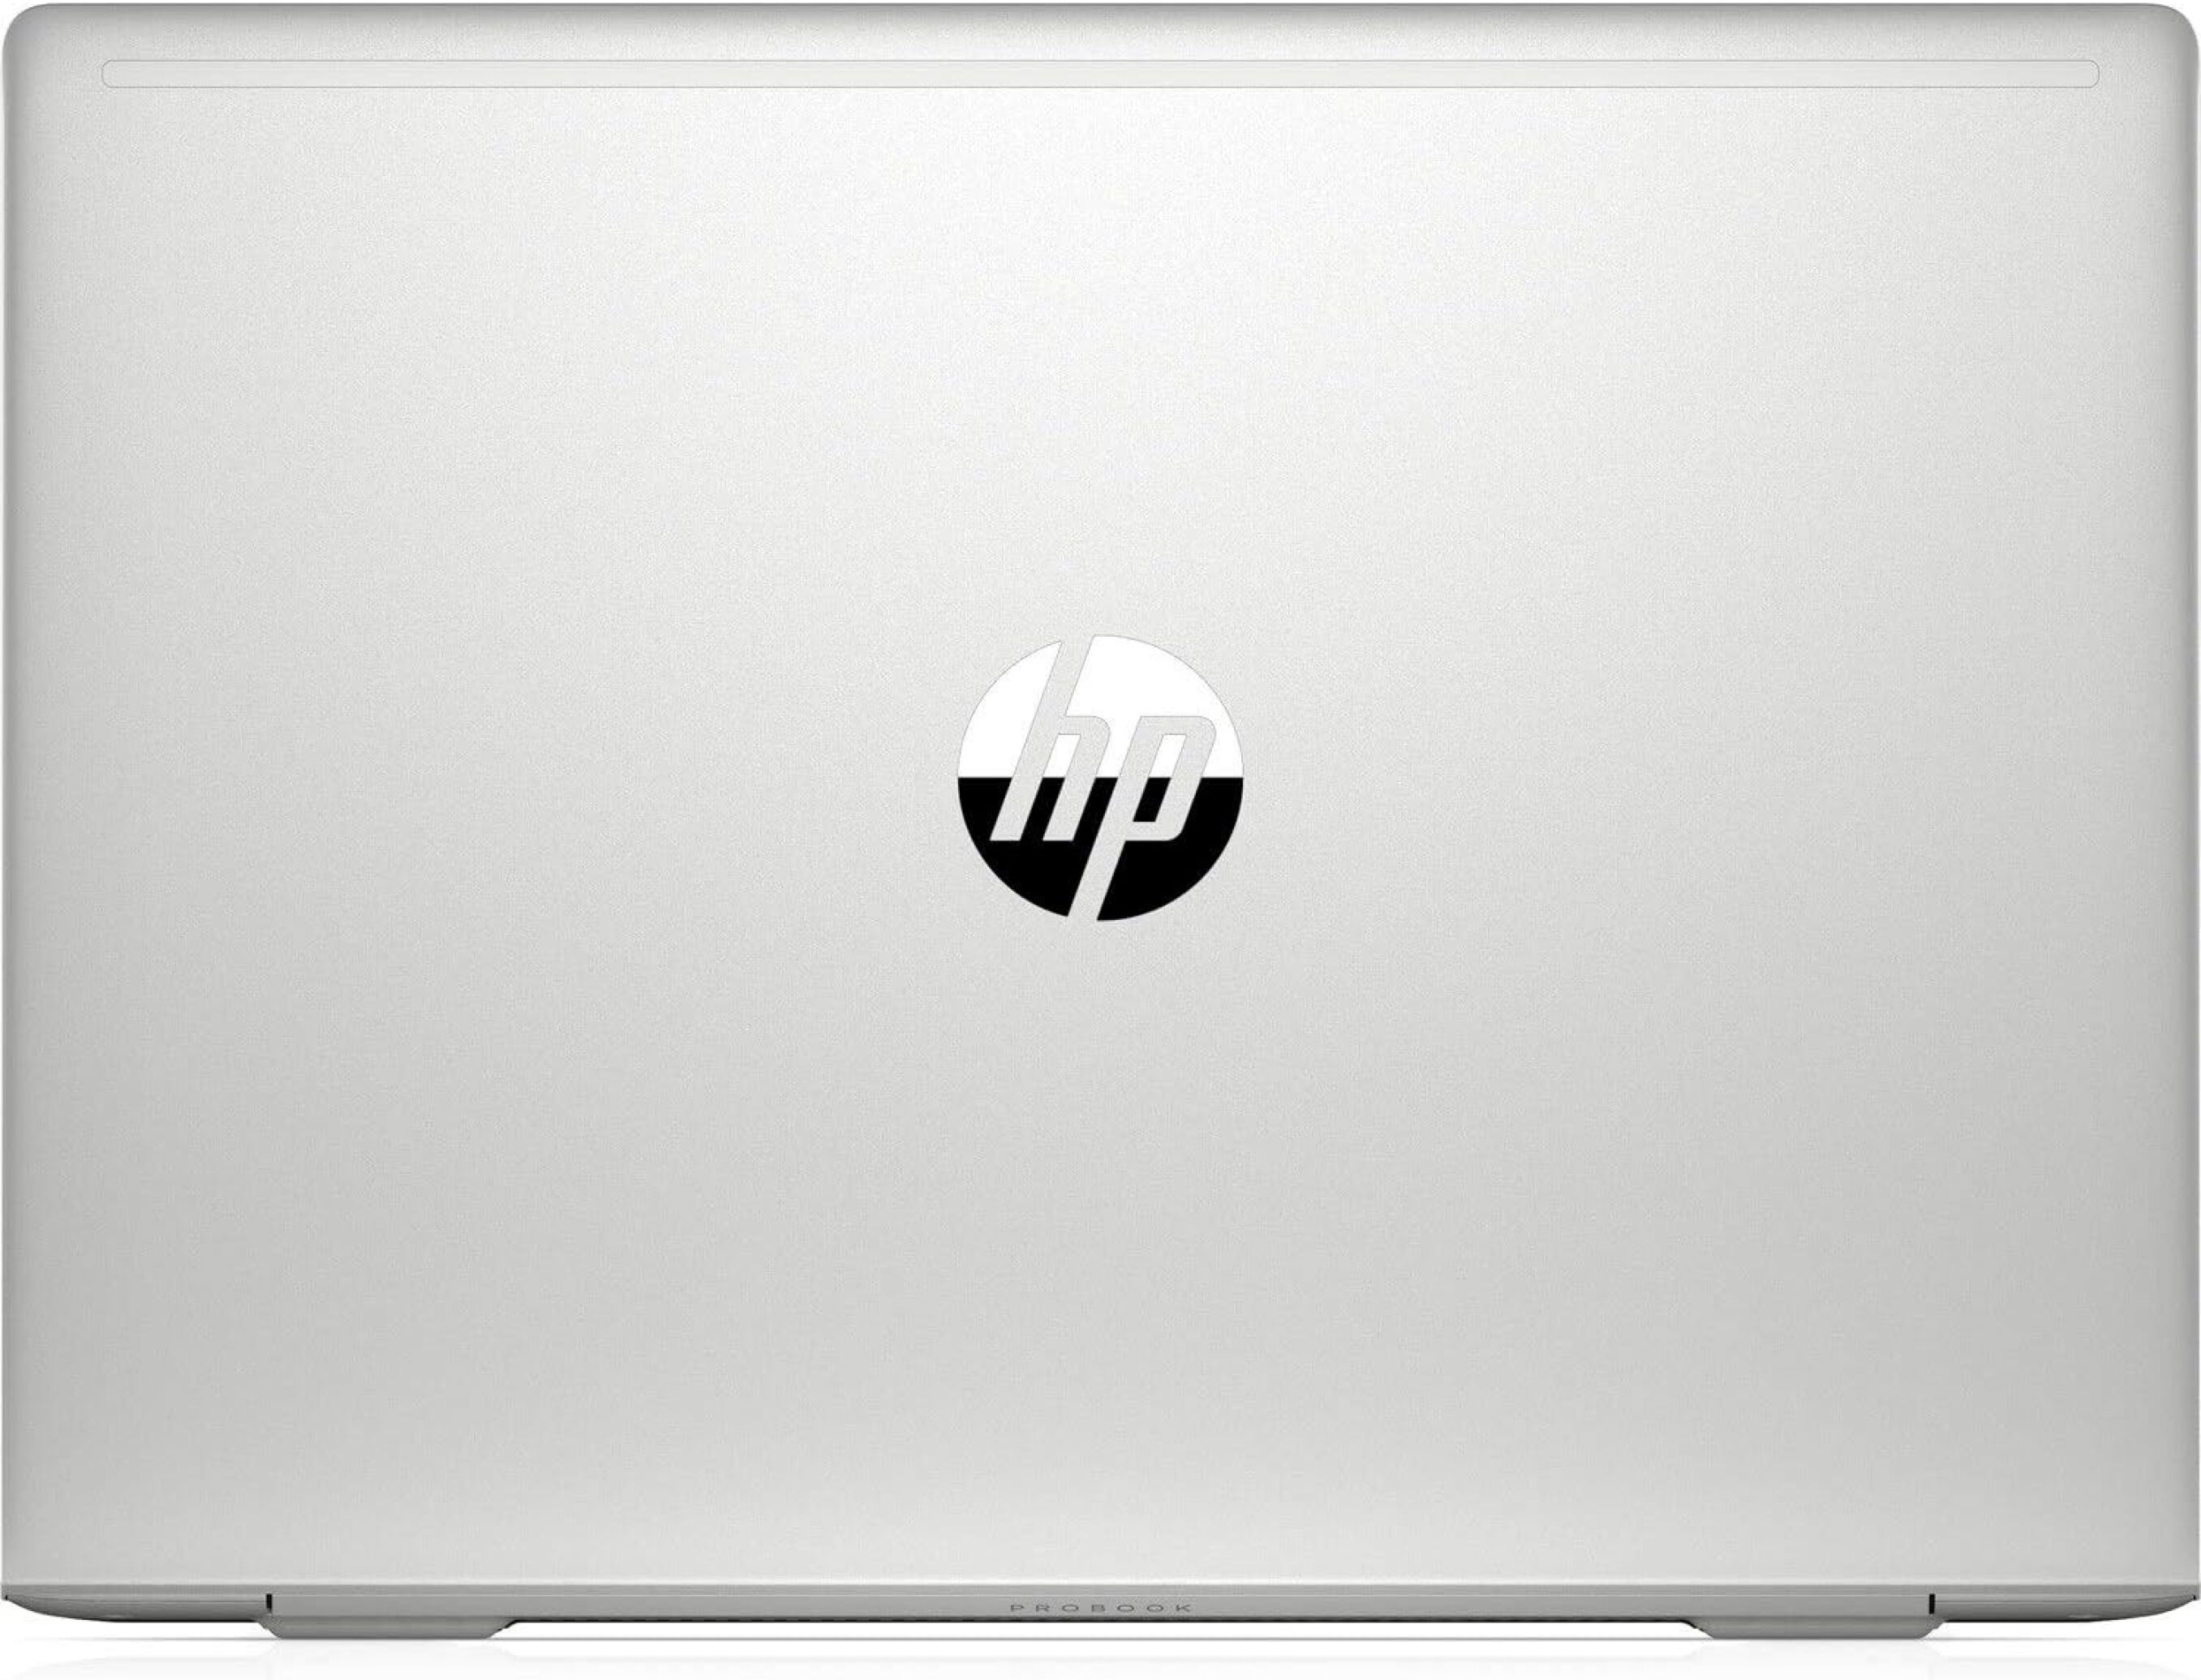  خرید و قیمت لپ تاپ اچ پی HP ProBook 440 G7 i5 10210U | لاکچری لپ تاپ 